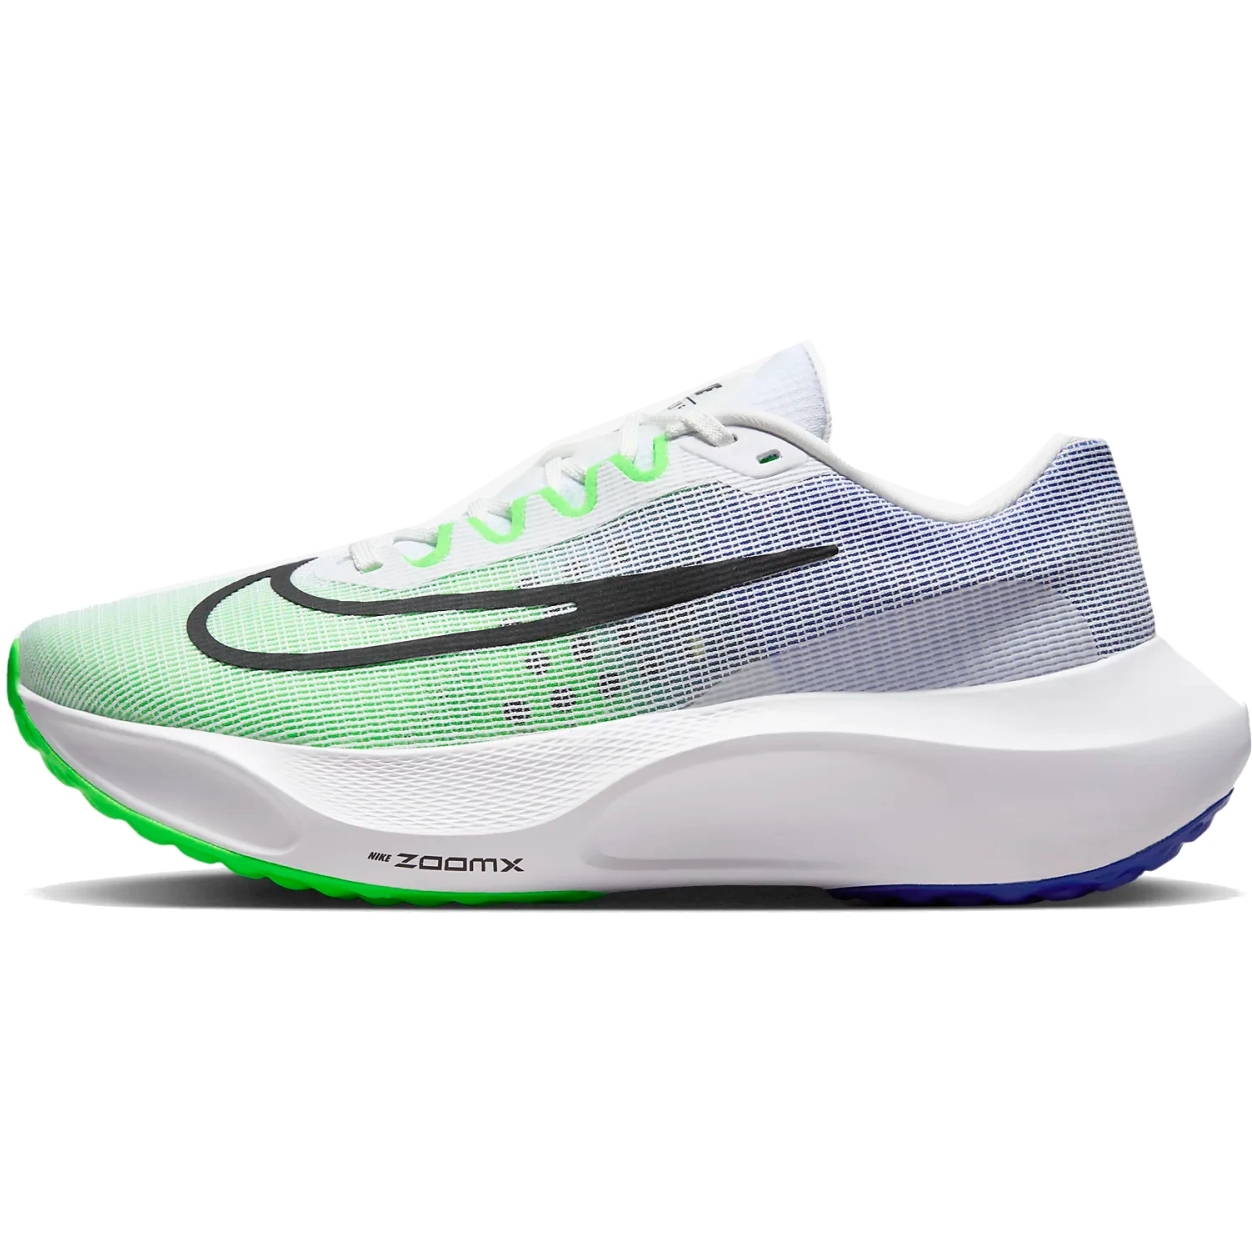 Produktbild von Nike Zoom Fly 5 Straßenlaufschuhe Herren - white/green strike/racer blue/black DM8968-101